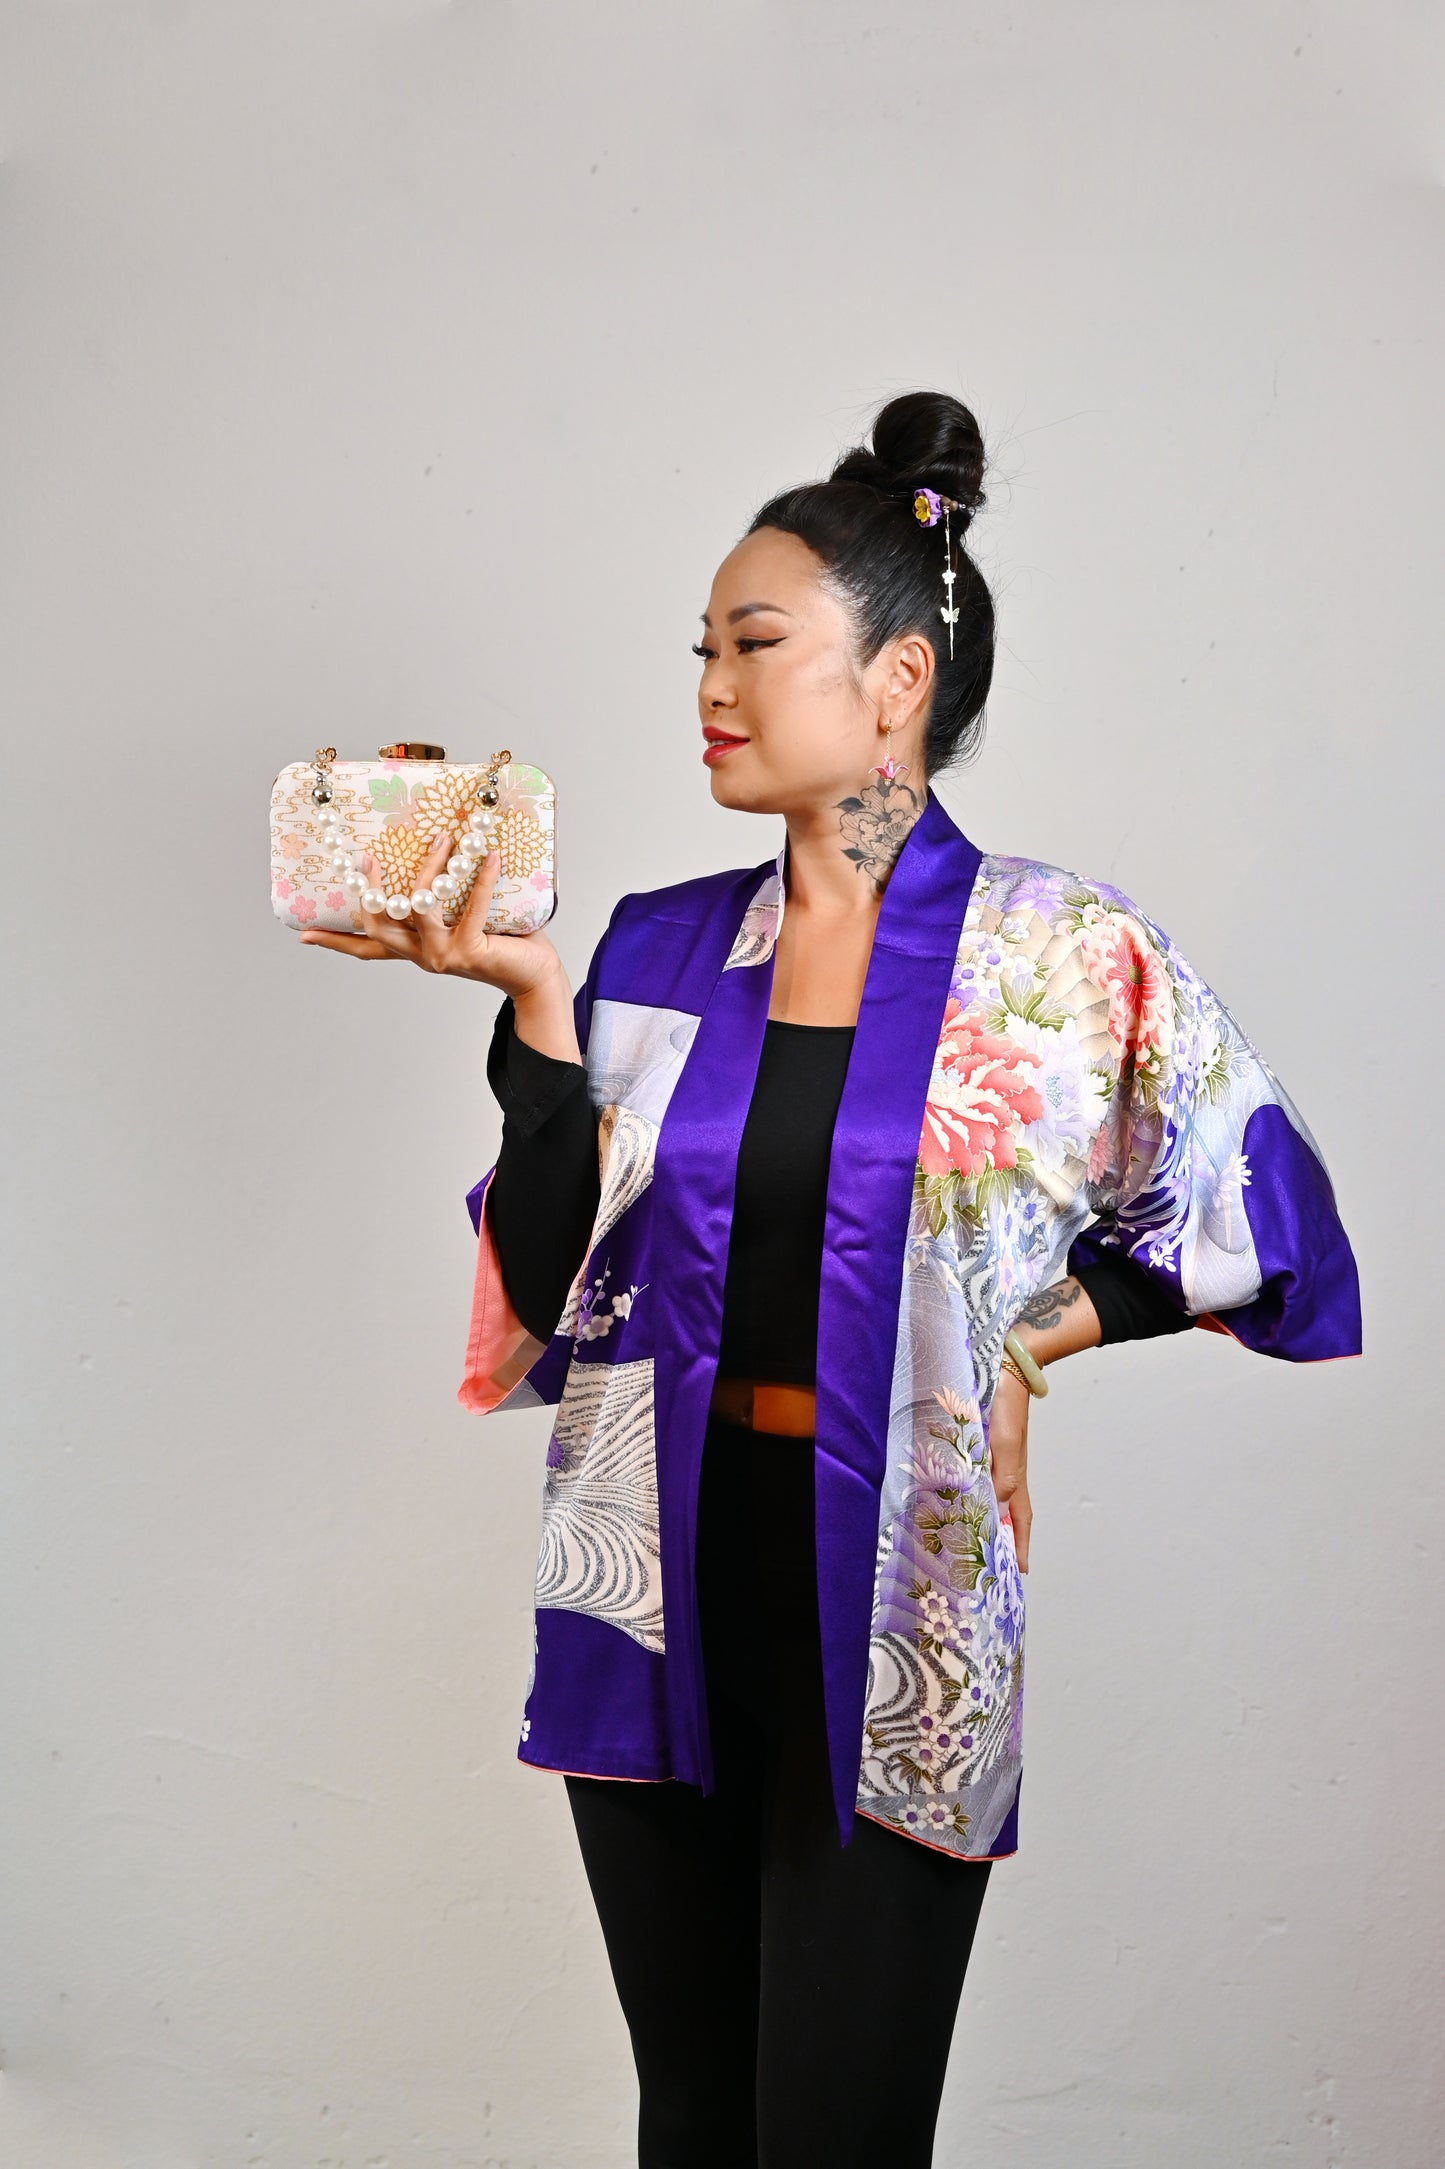 【Purpur, große Blumen und Wasser】 Happi Jacke ＜ Ausgezeichnet ・ Seide ＞ Für Männer, für Frauen, japanische Kimono, Japan Unisexesische Kleidung, Unisex, japanische Geschenke, Originaldesigns